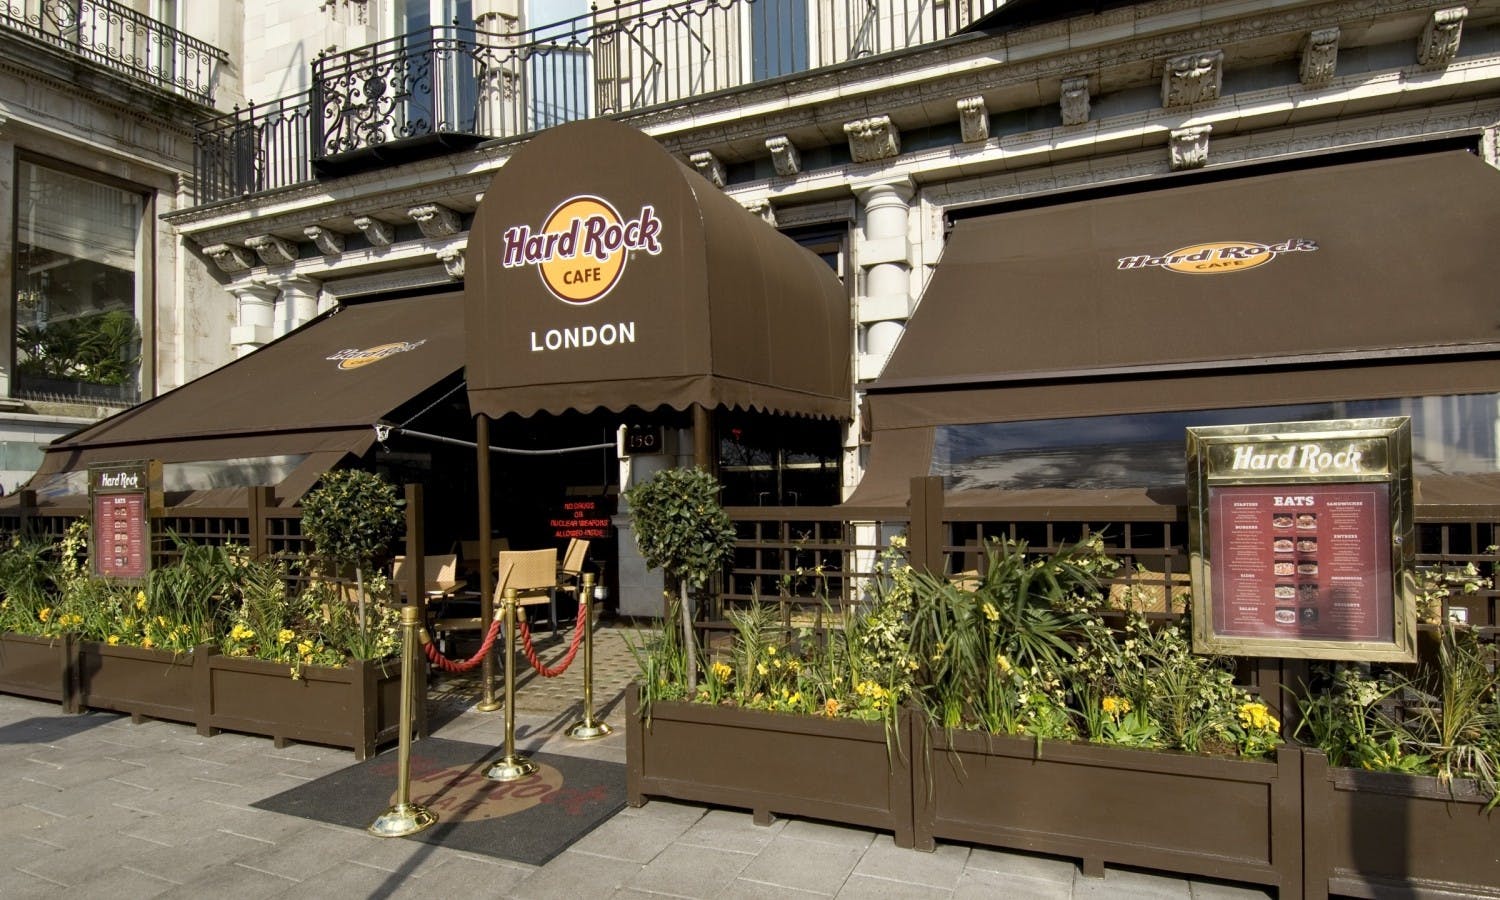 Ingresso prioritario all'Hard Rock Cafe di Londra con pranzo o cena